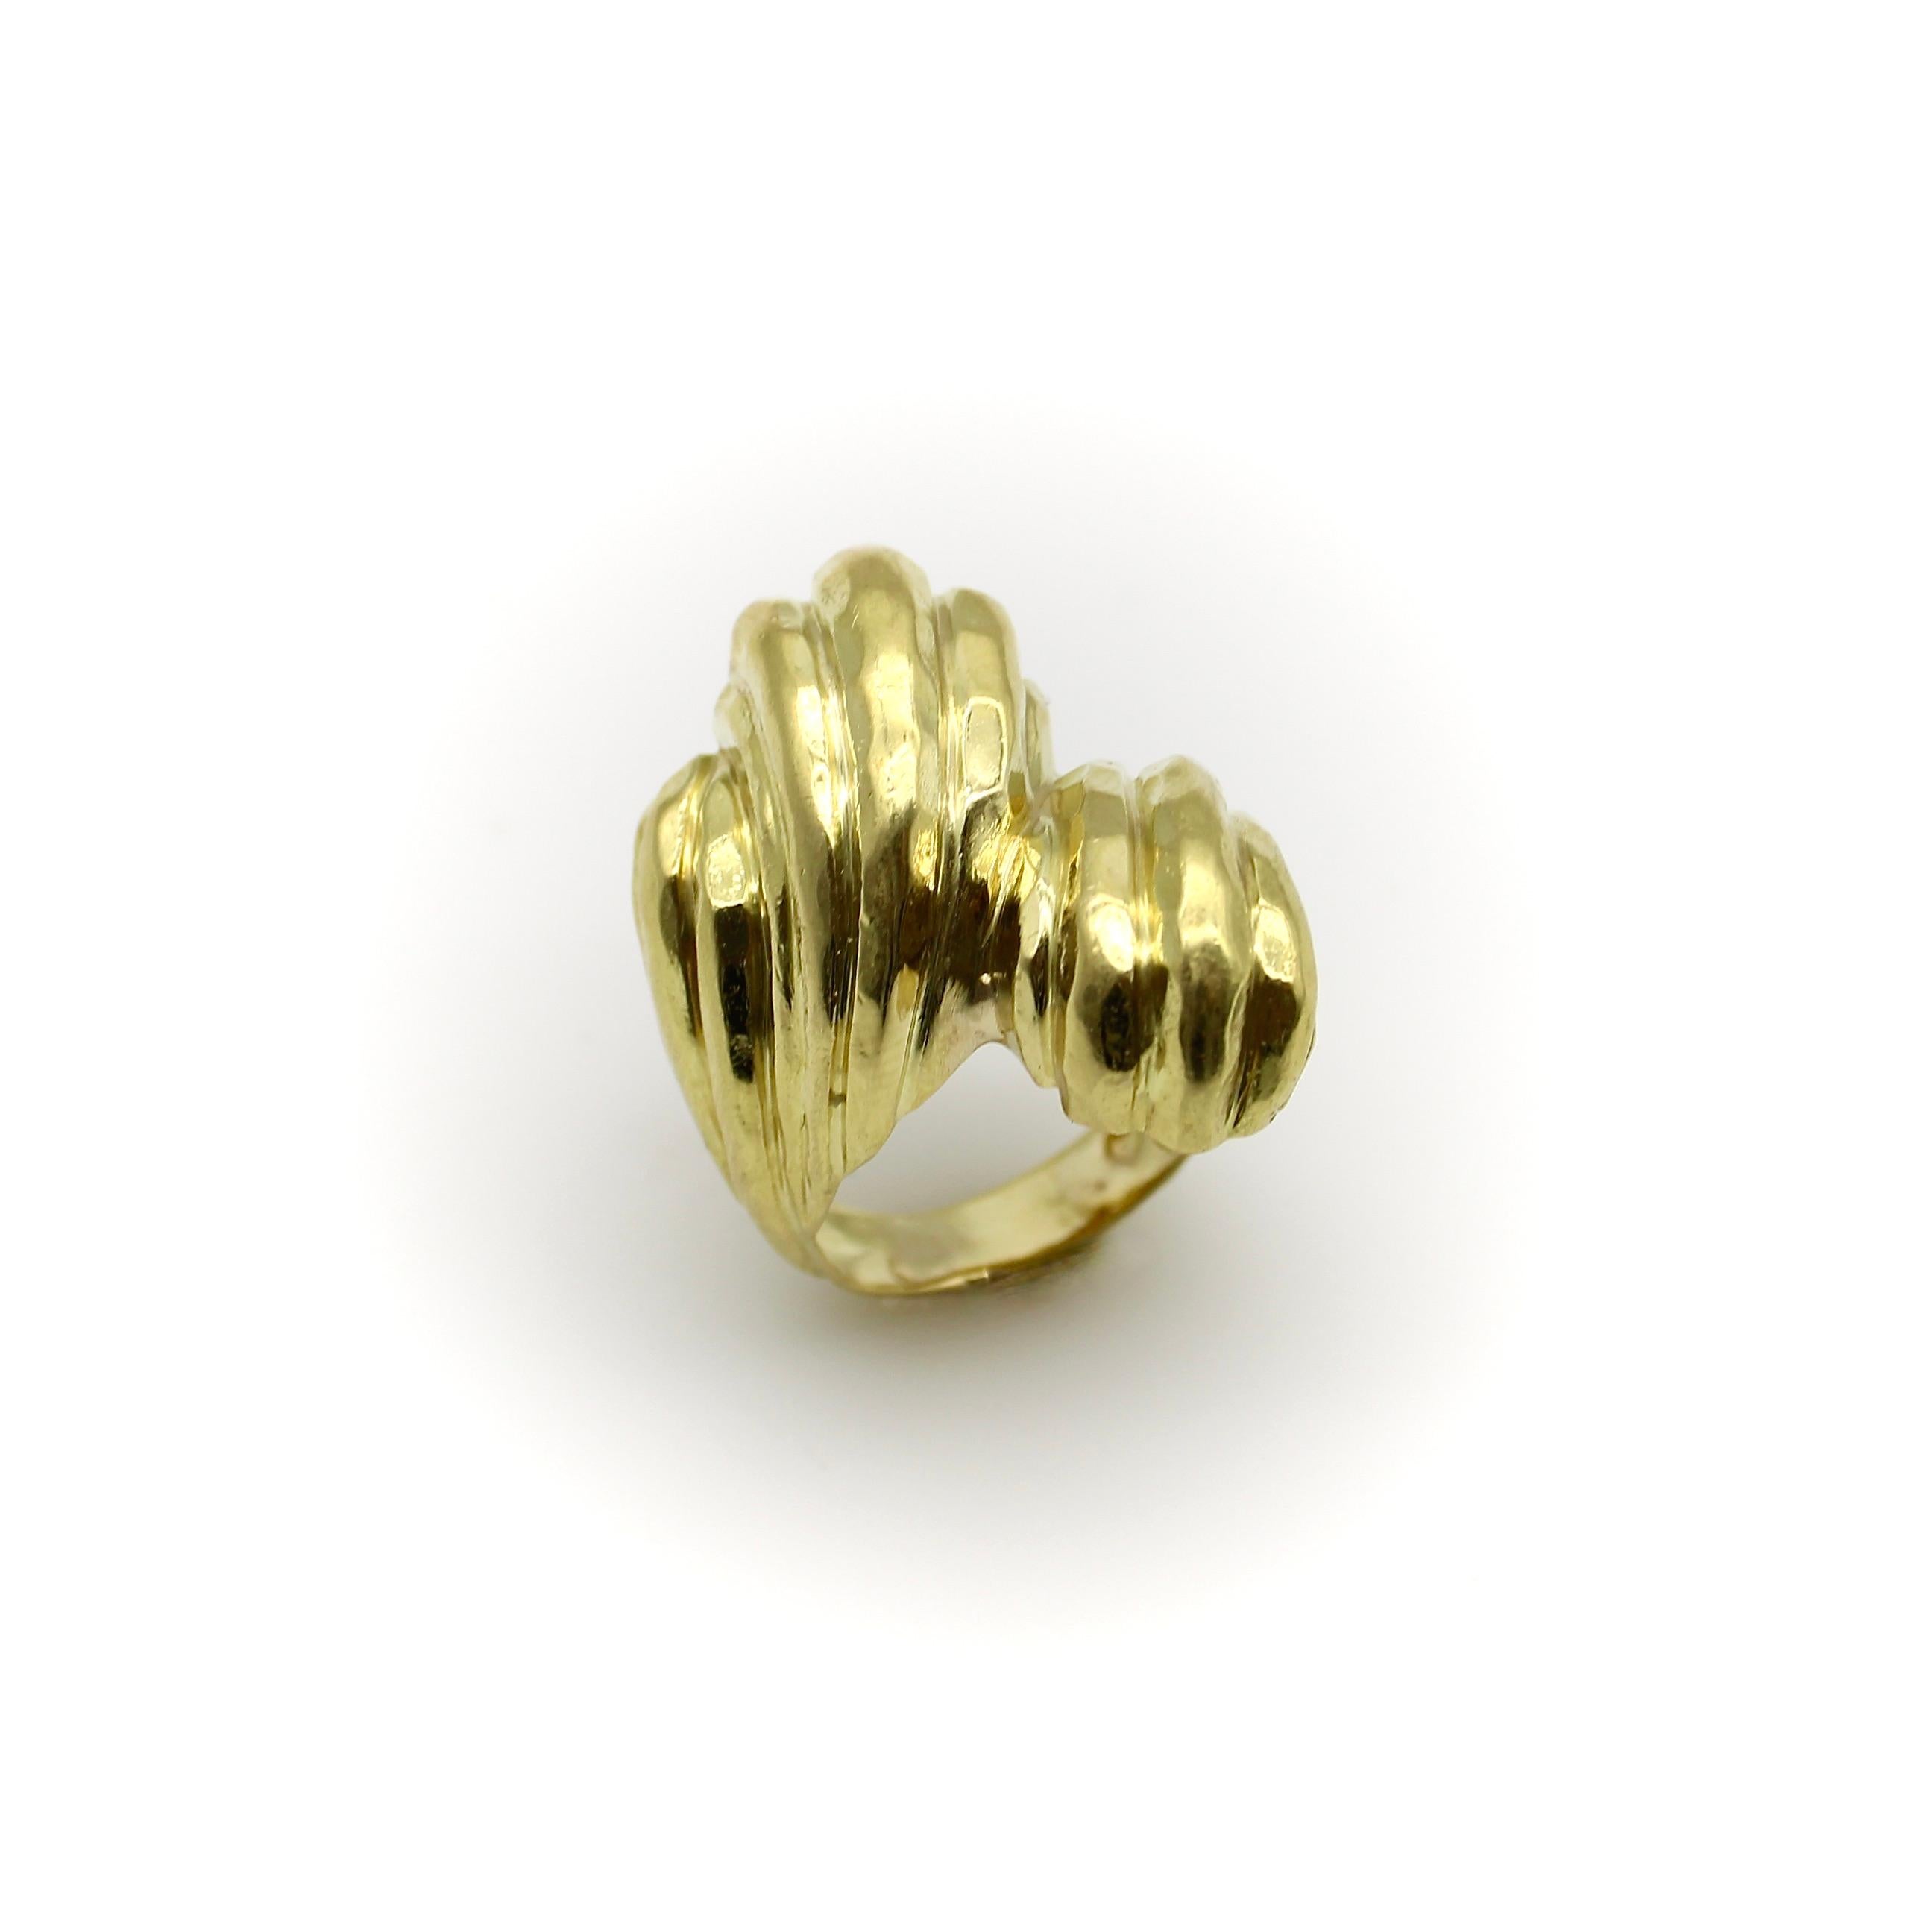 Dieser Ring aus 18 Karat Gold ist groß und kühn - ein klassisches Design von Henry Dunay, das an der Hand sehr präsent ist. Der Ring hat eine skulpturale Form mit einem handgehämmerten Finish, das die großen facettierten Flächen aus Gold betont, die